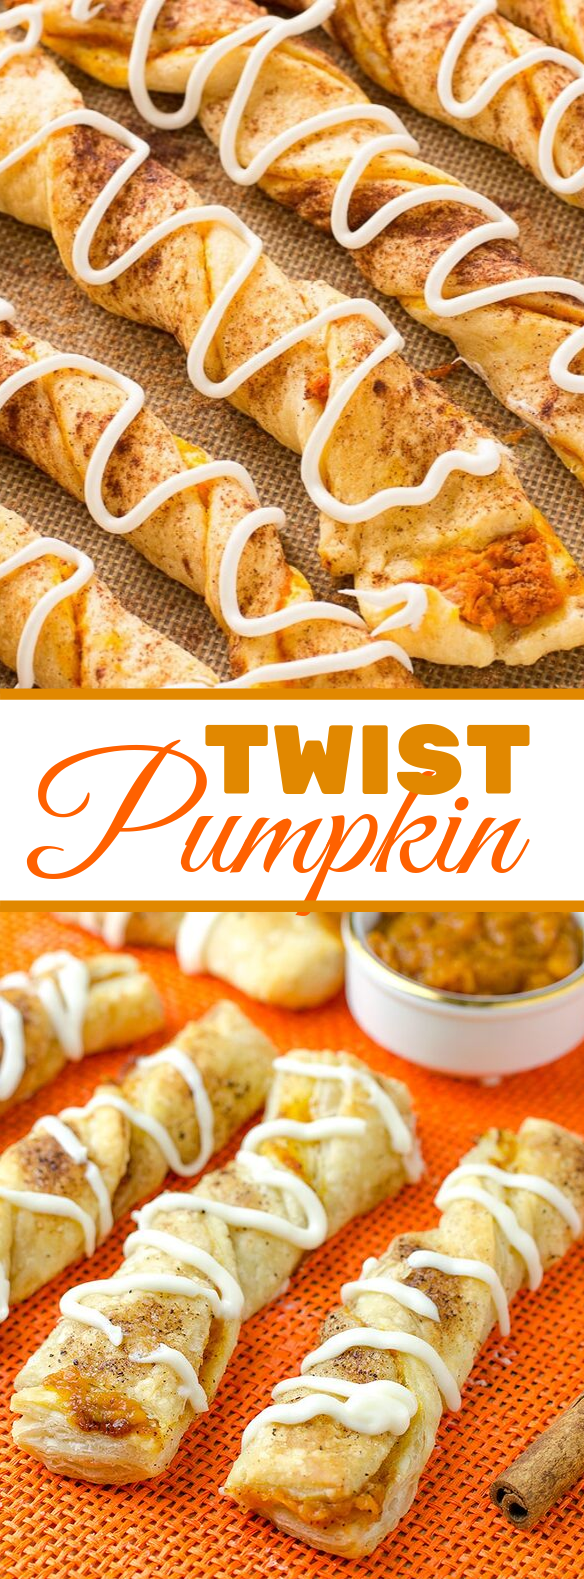 Pumpkin Twists #desserts #falltreats